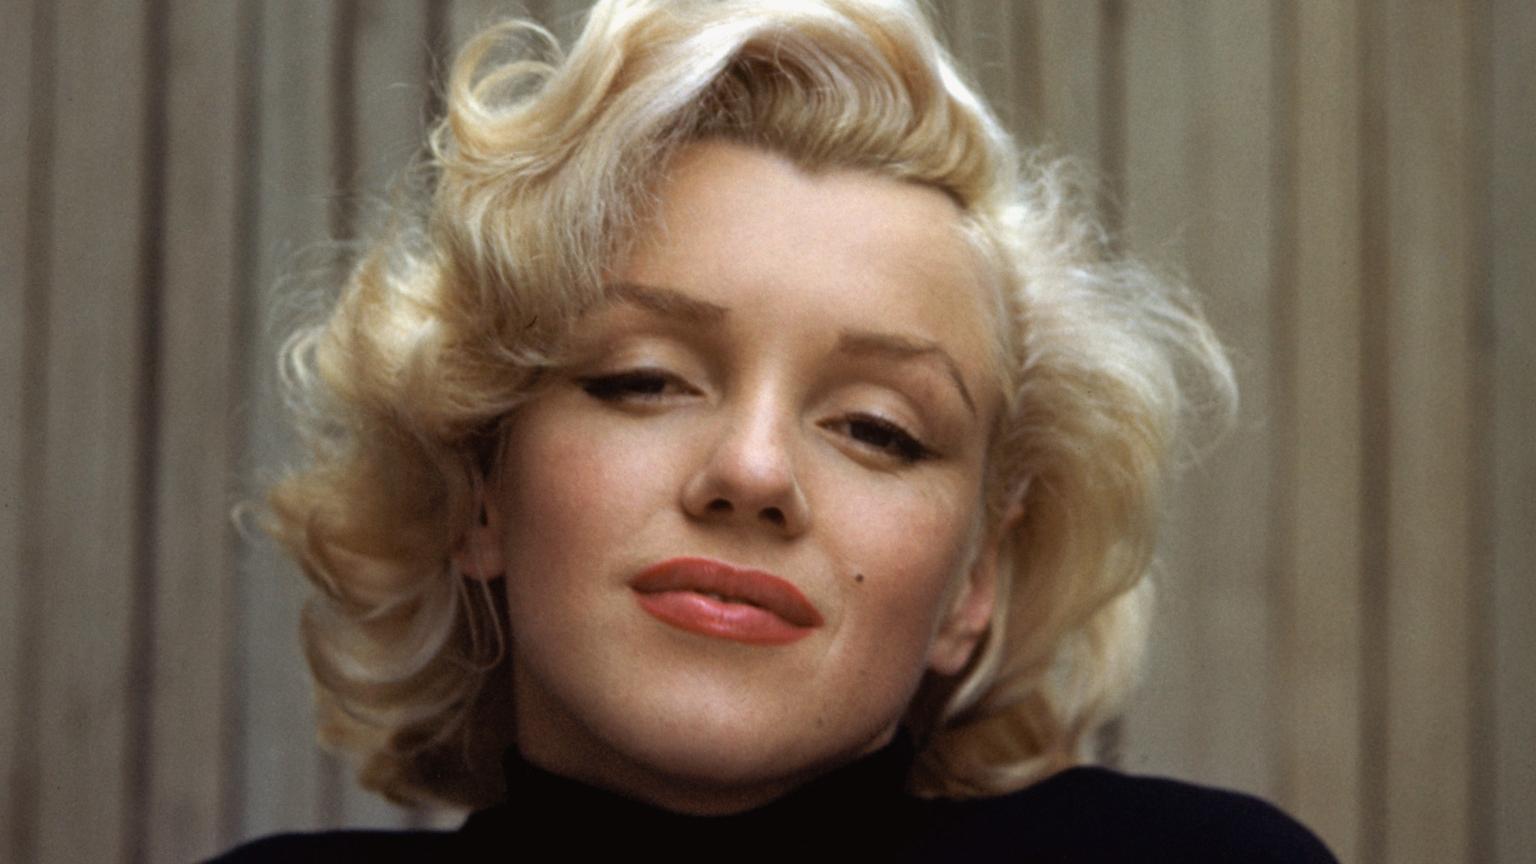 "River of no return" par Marilyn Monroe est citée dans "Infidèles" (Ed. du Seuil, 2012): https://youtu.be/F_x7ppOuq_k
